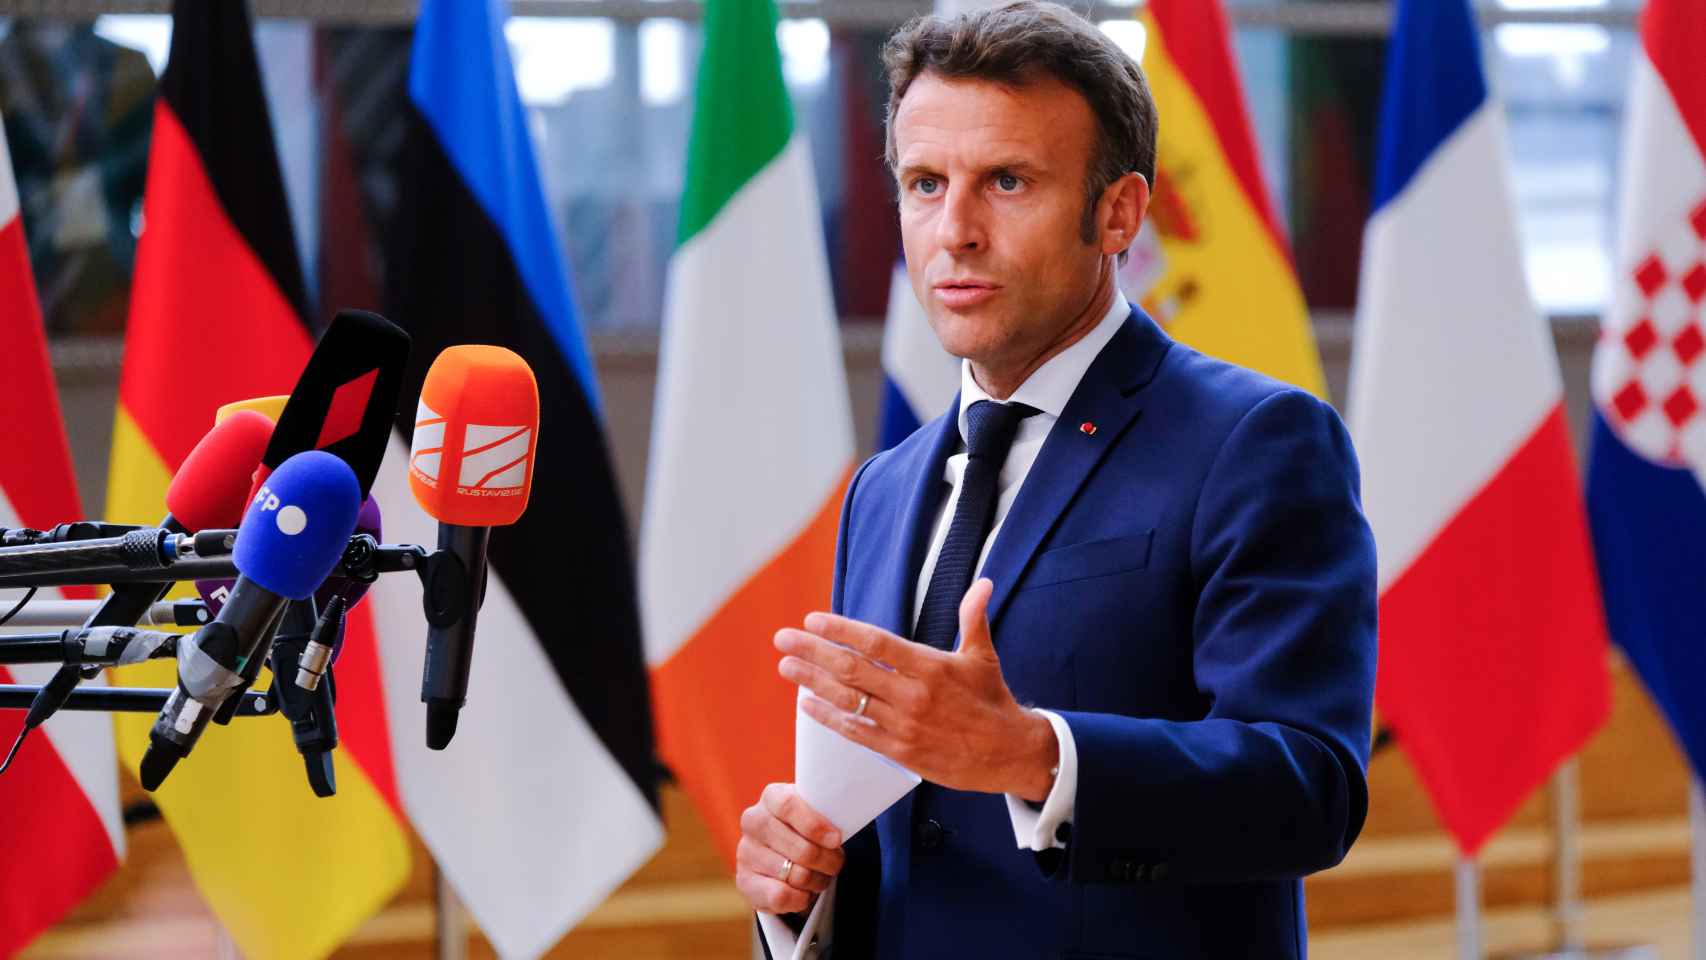 El presidente francés, Emmanuel Macron, defiende mantener el diálogo con Putin